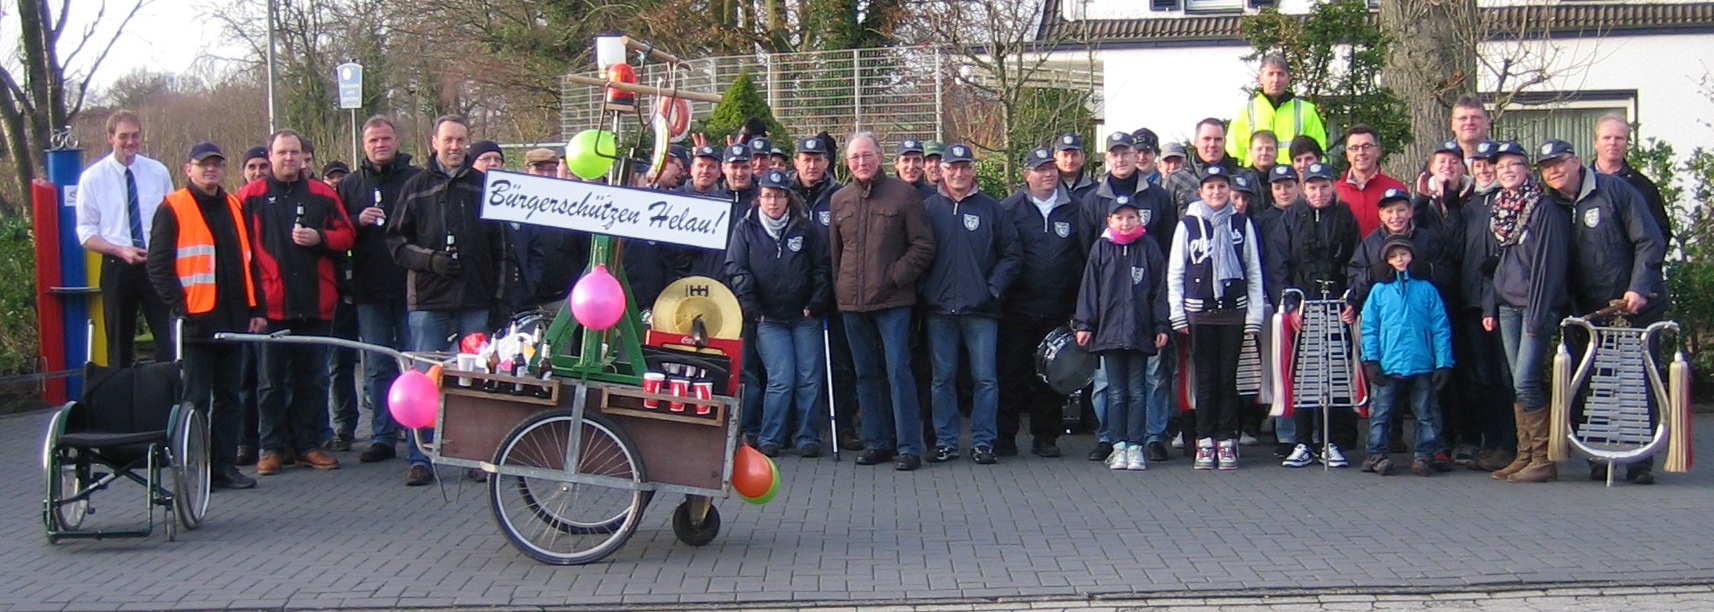 Mitglieder des Bürgerschützenvereins Hauenhorst zogen als Vorboten der närrischen Zeit durch die Ortschaft